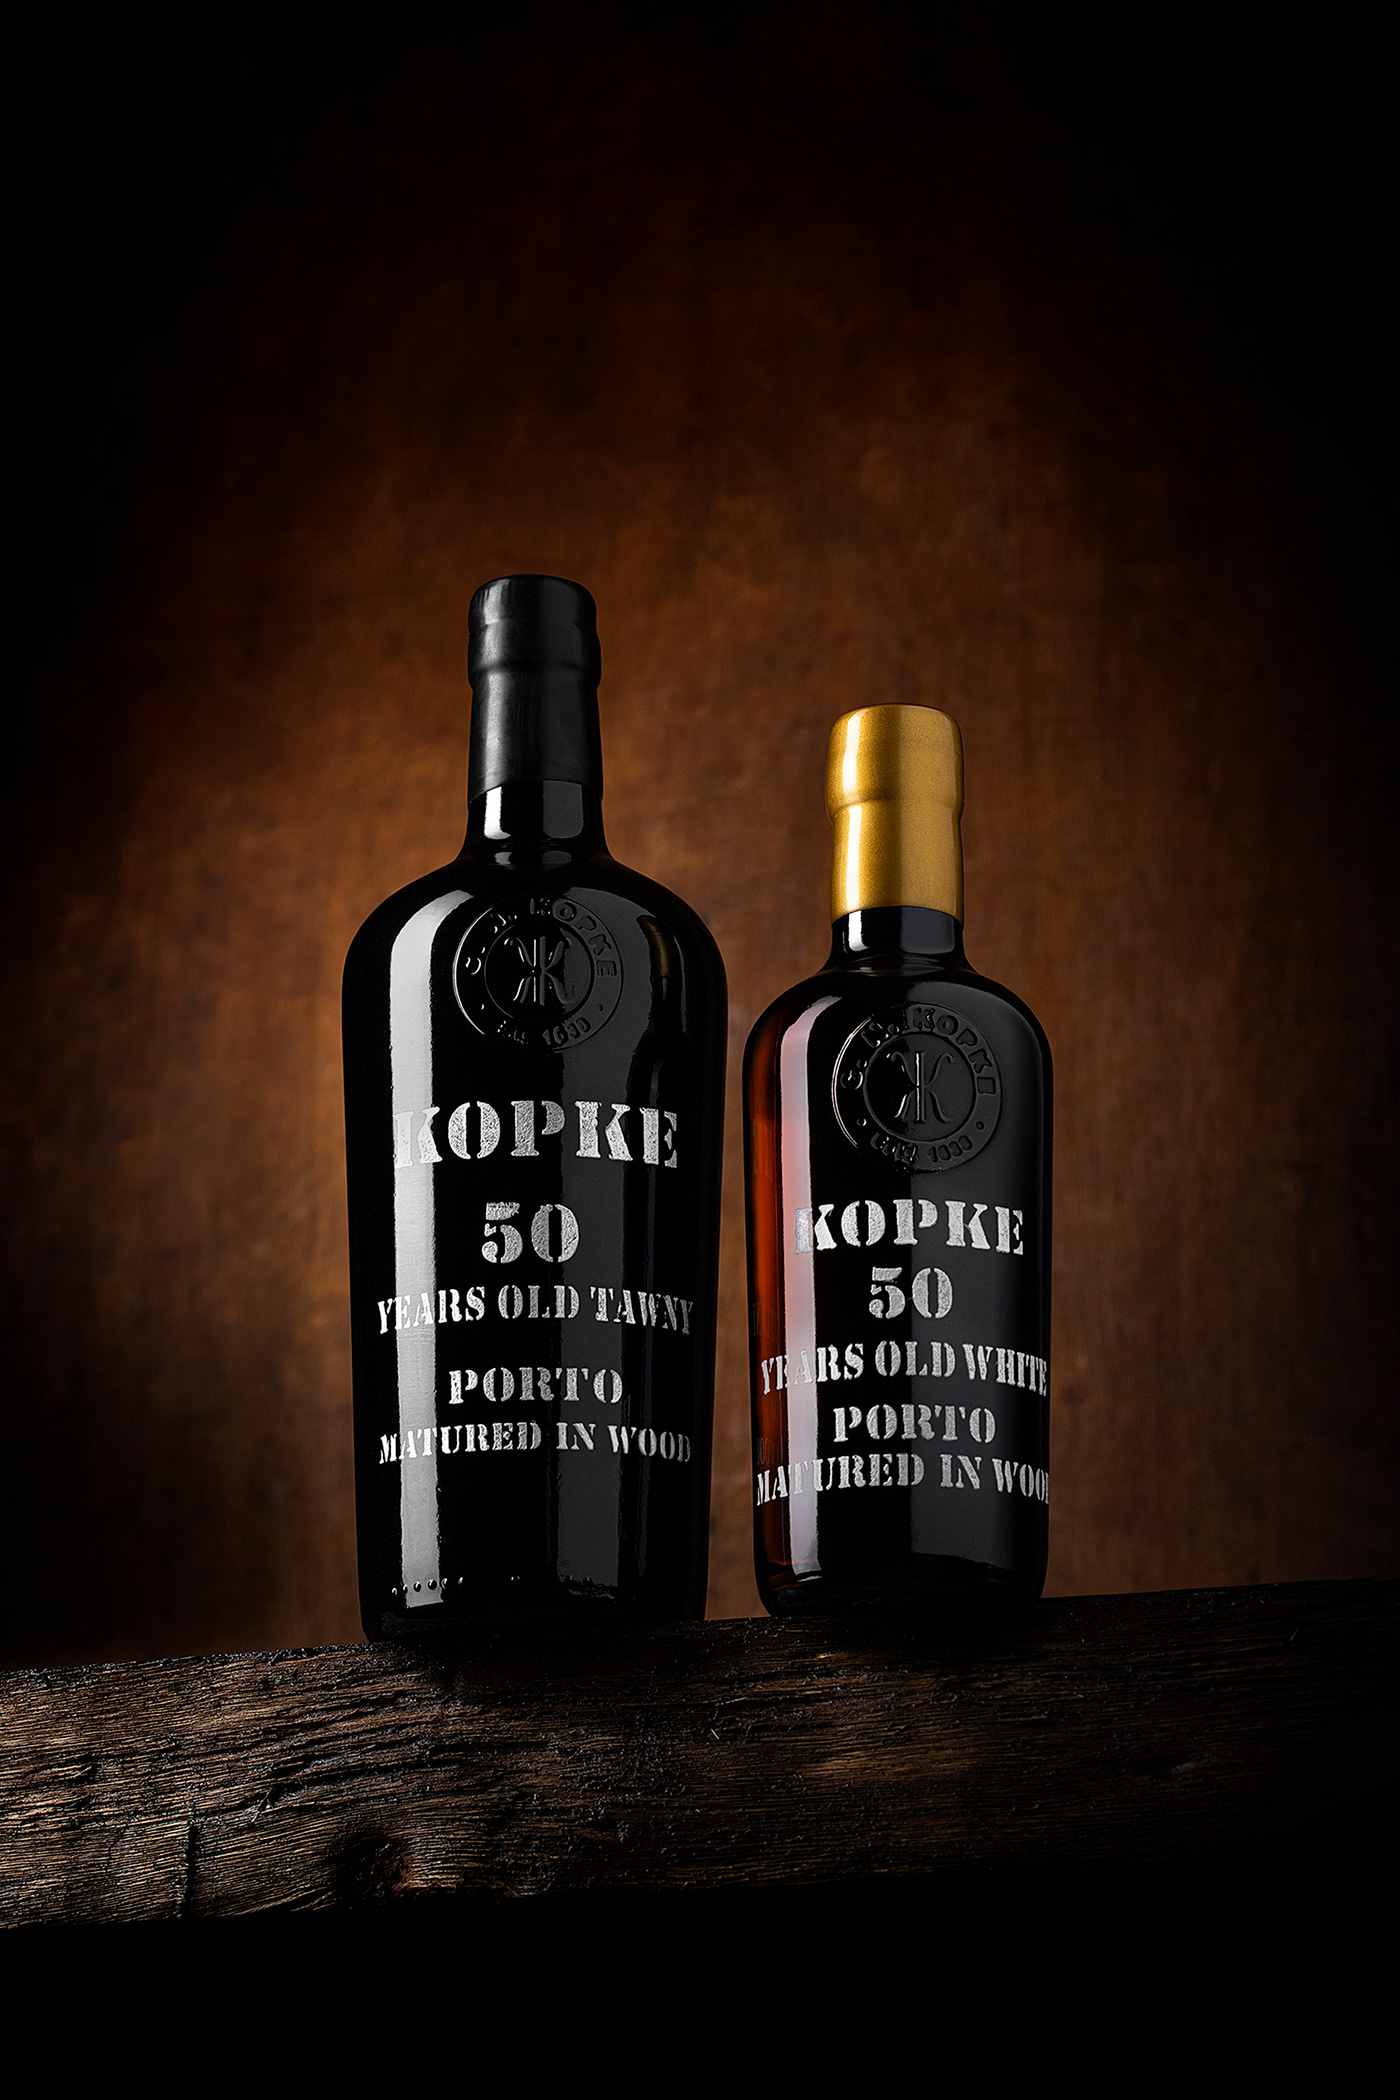 alvaromartino bottle port wine porto Product Photography studio wine kopke